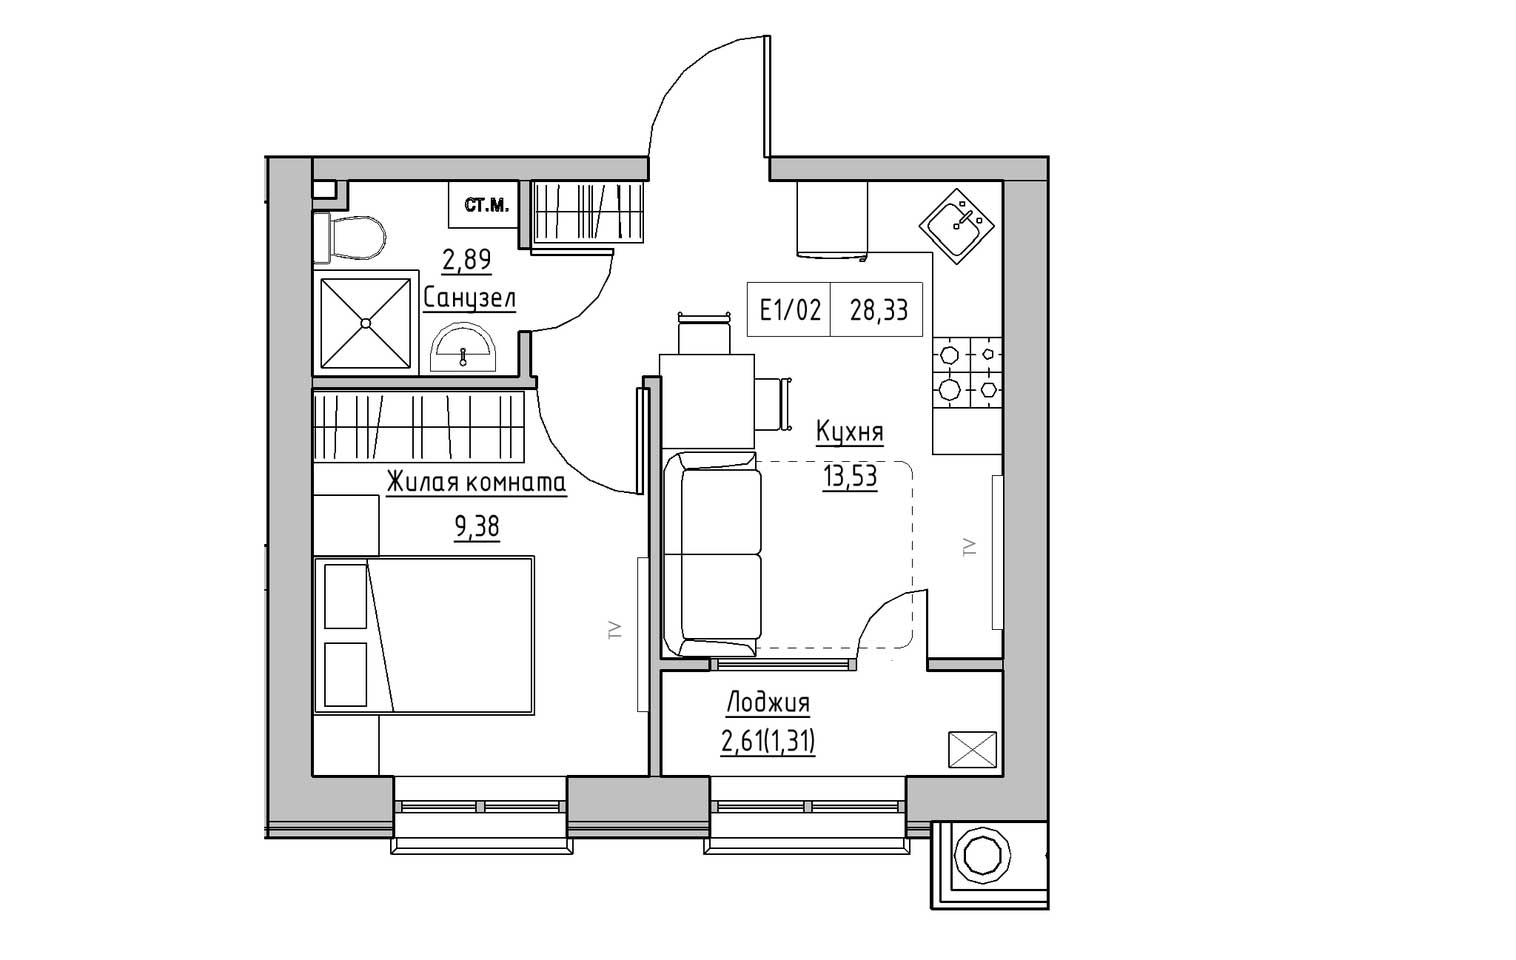 Планировка 1-к квартира площей 28.33м2, KS-009-01/0013.